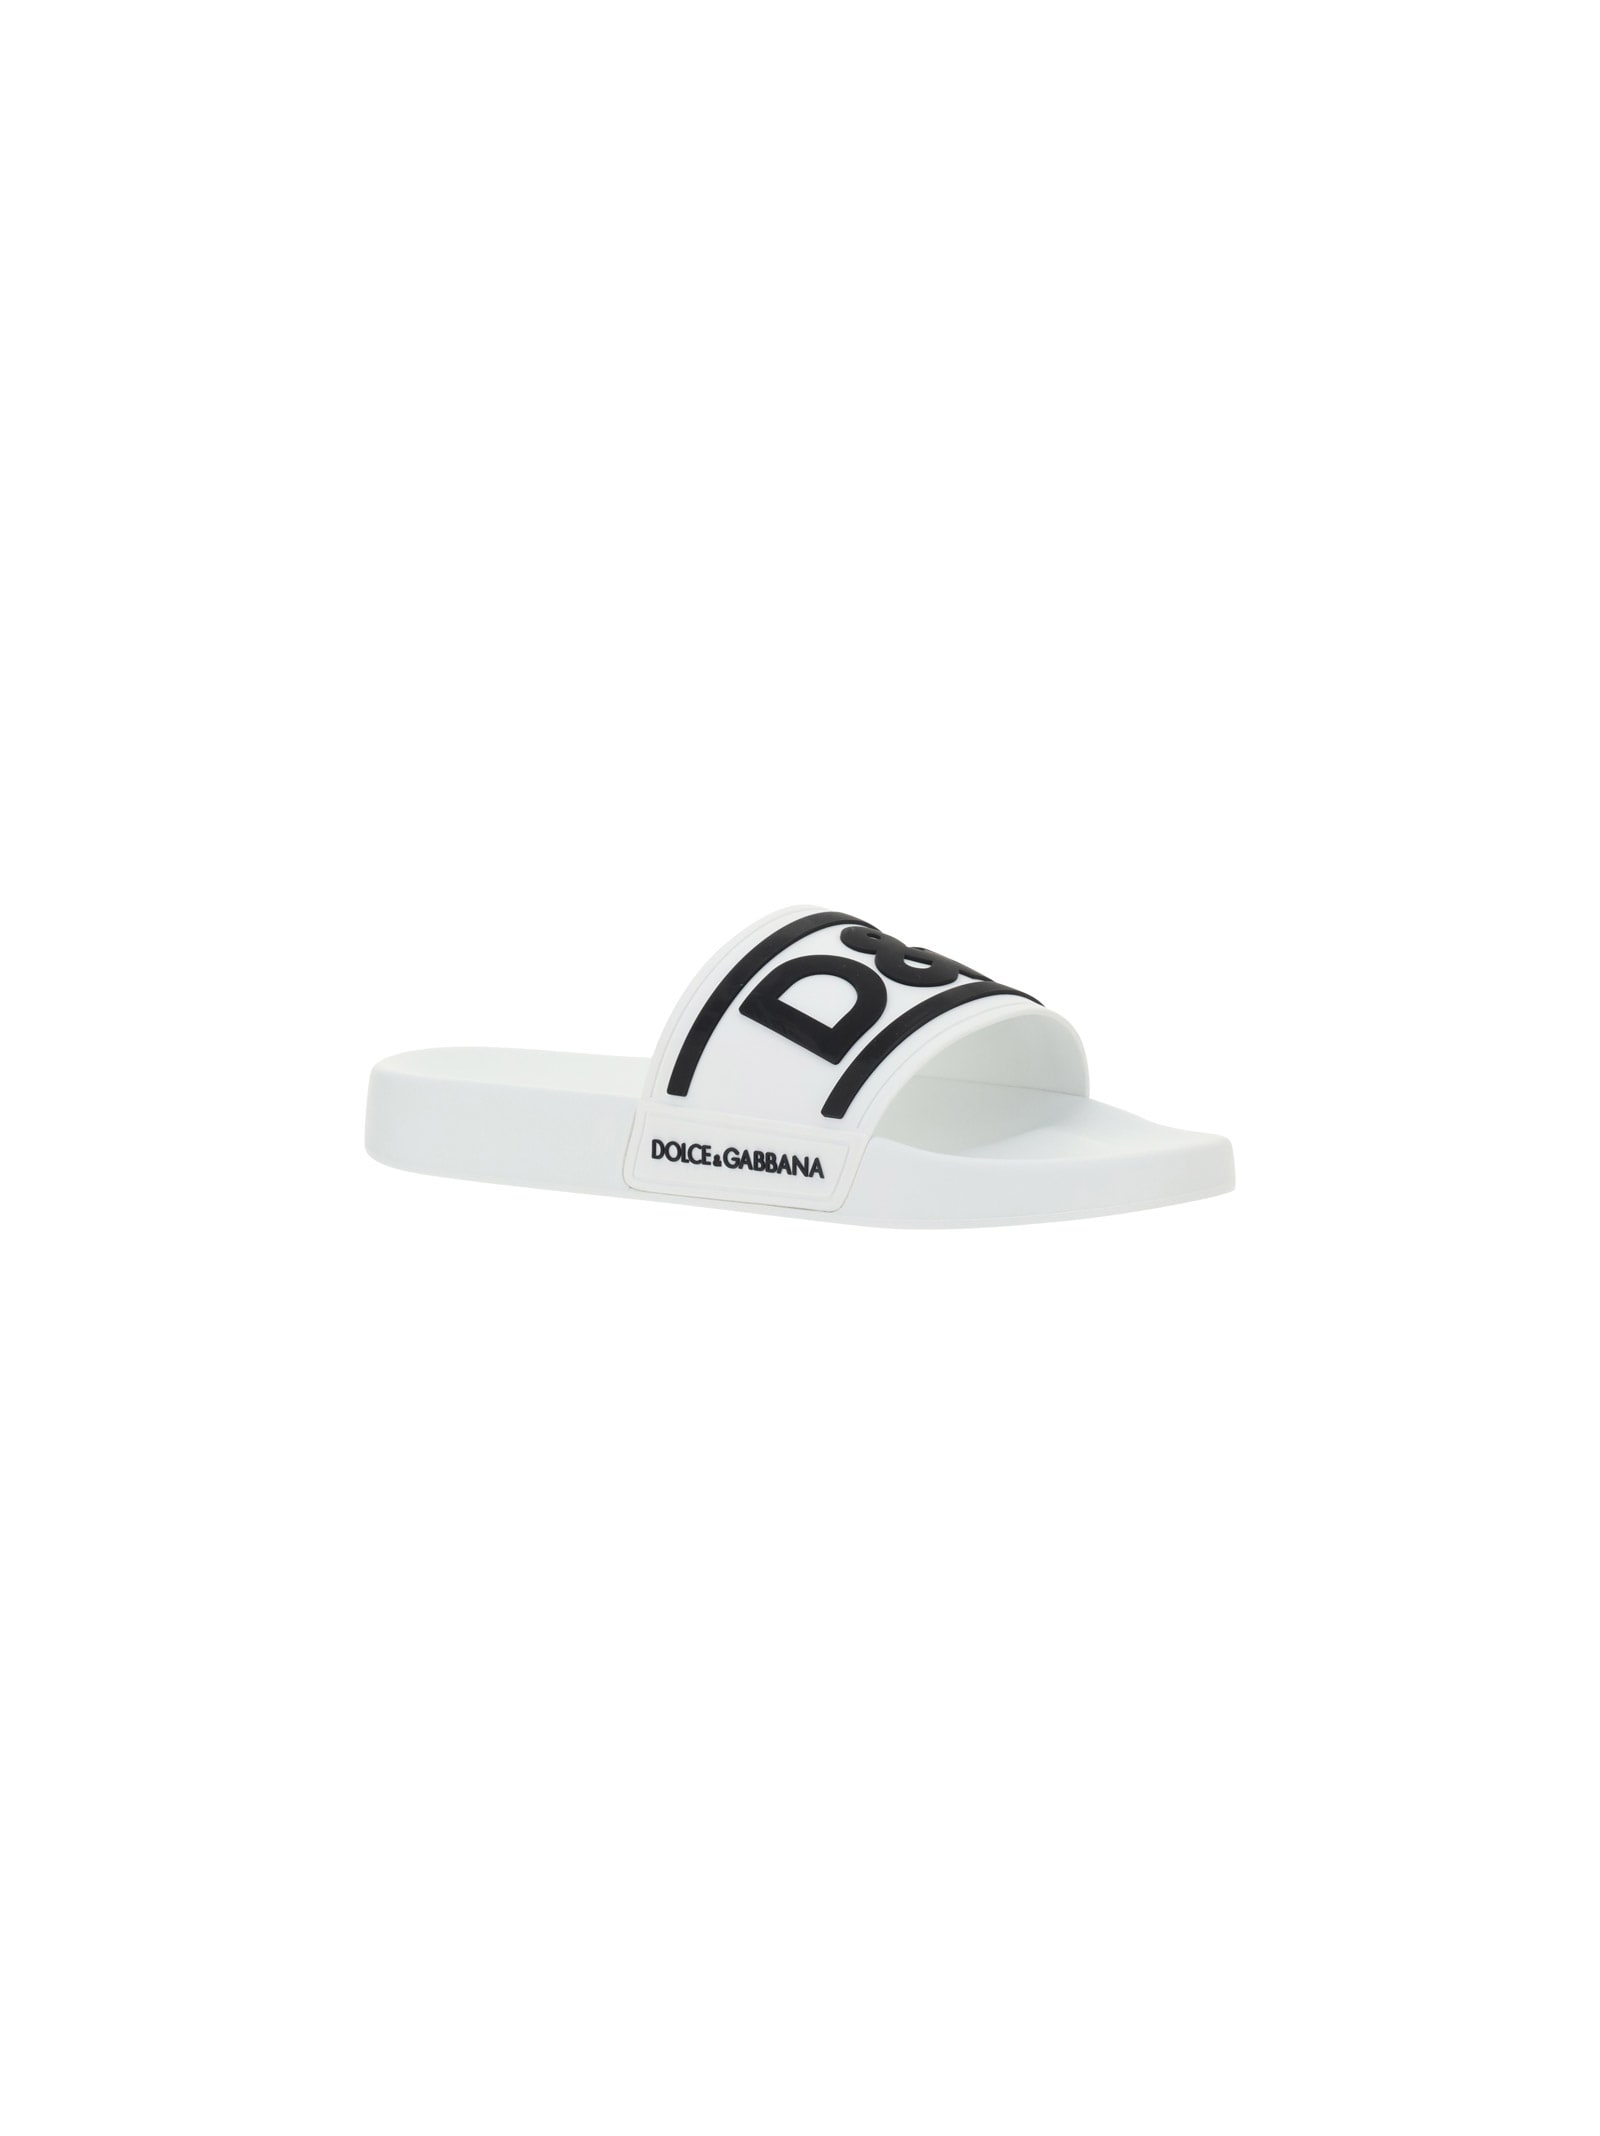 Shop Dolce & Gabbana Sandals In White/black